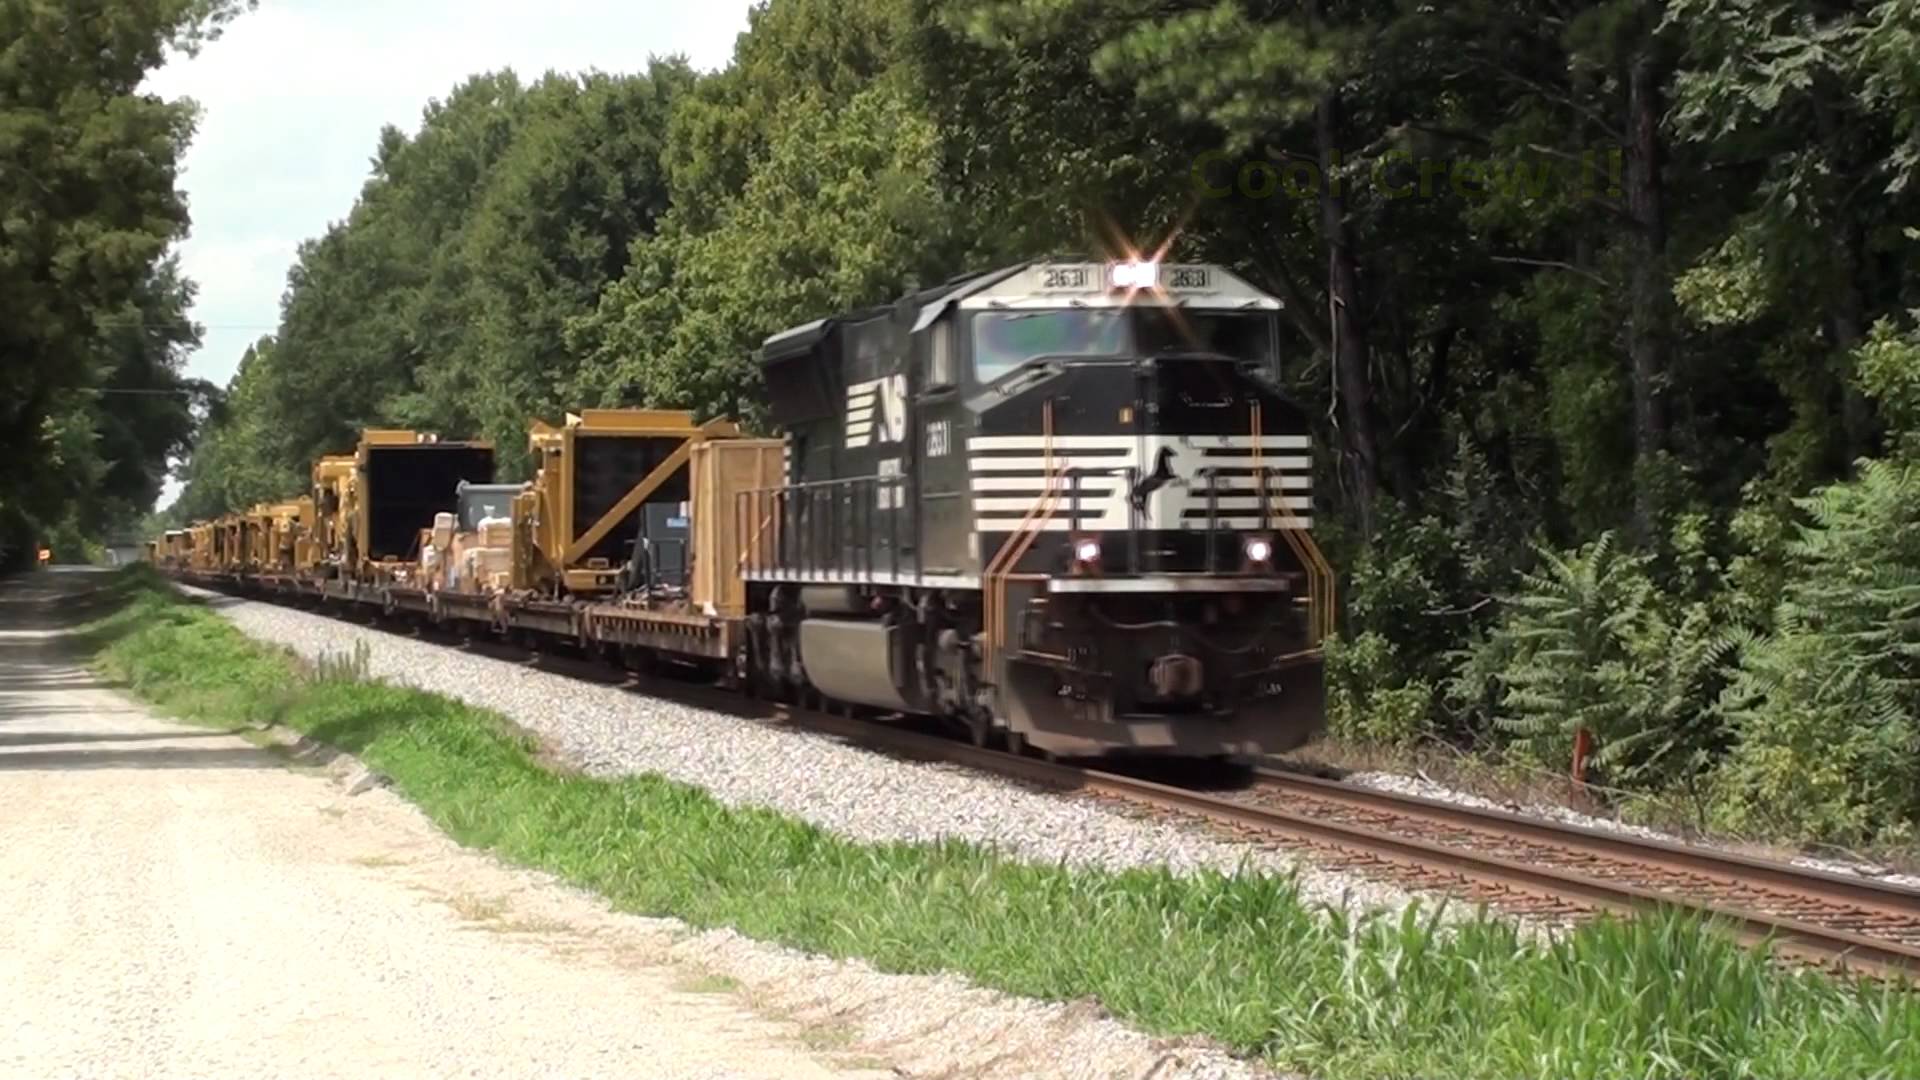 Caterpillar Equipment train NS 055 - YouTube